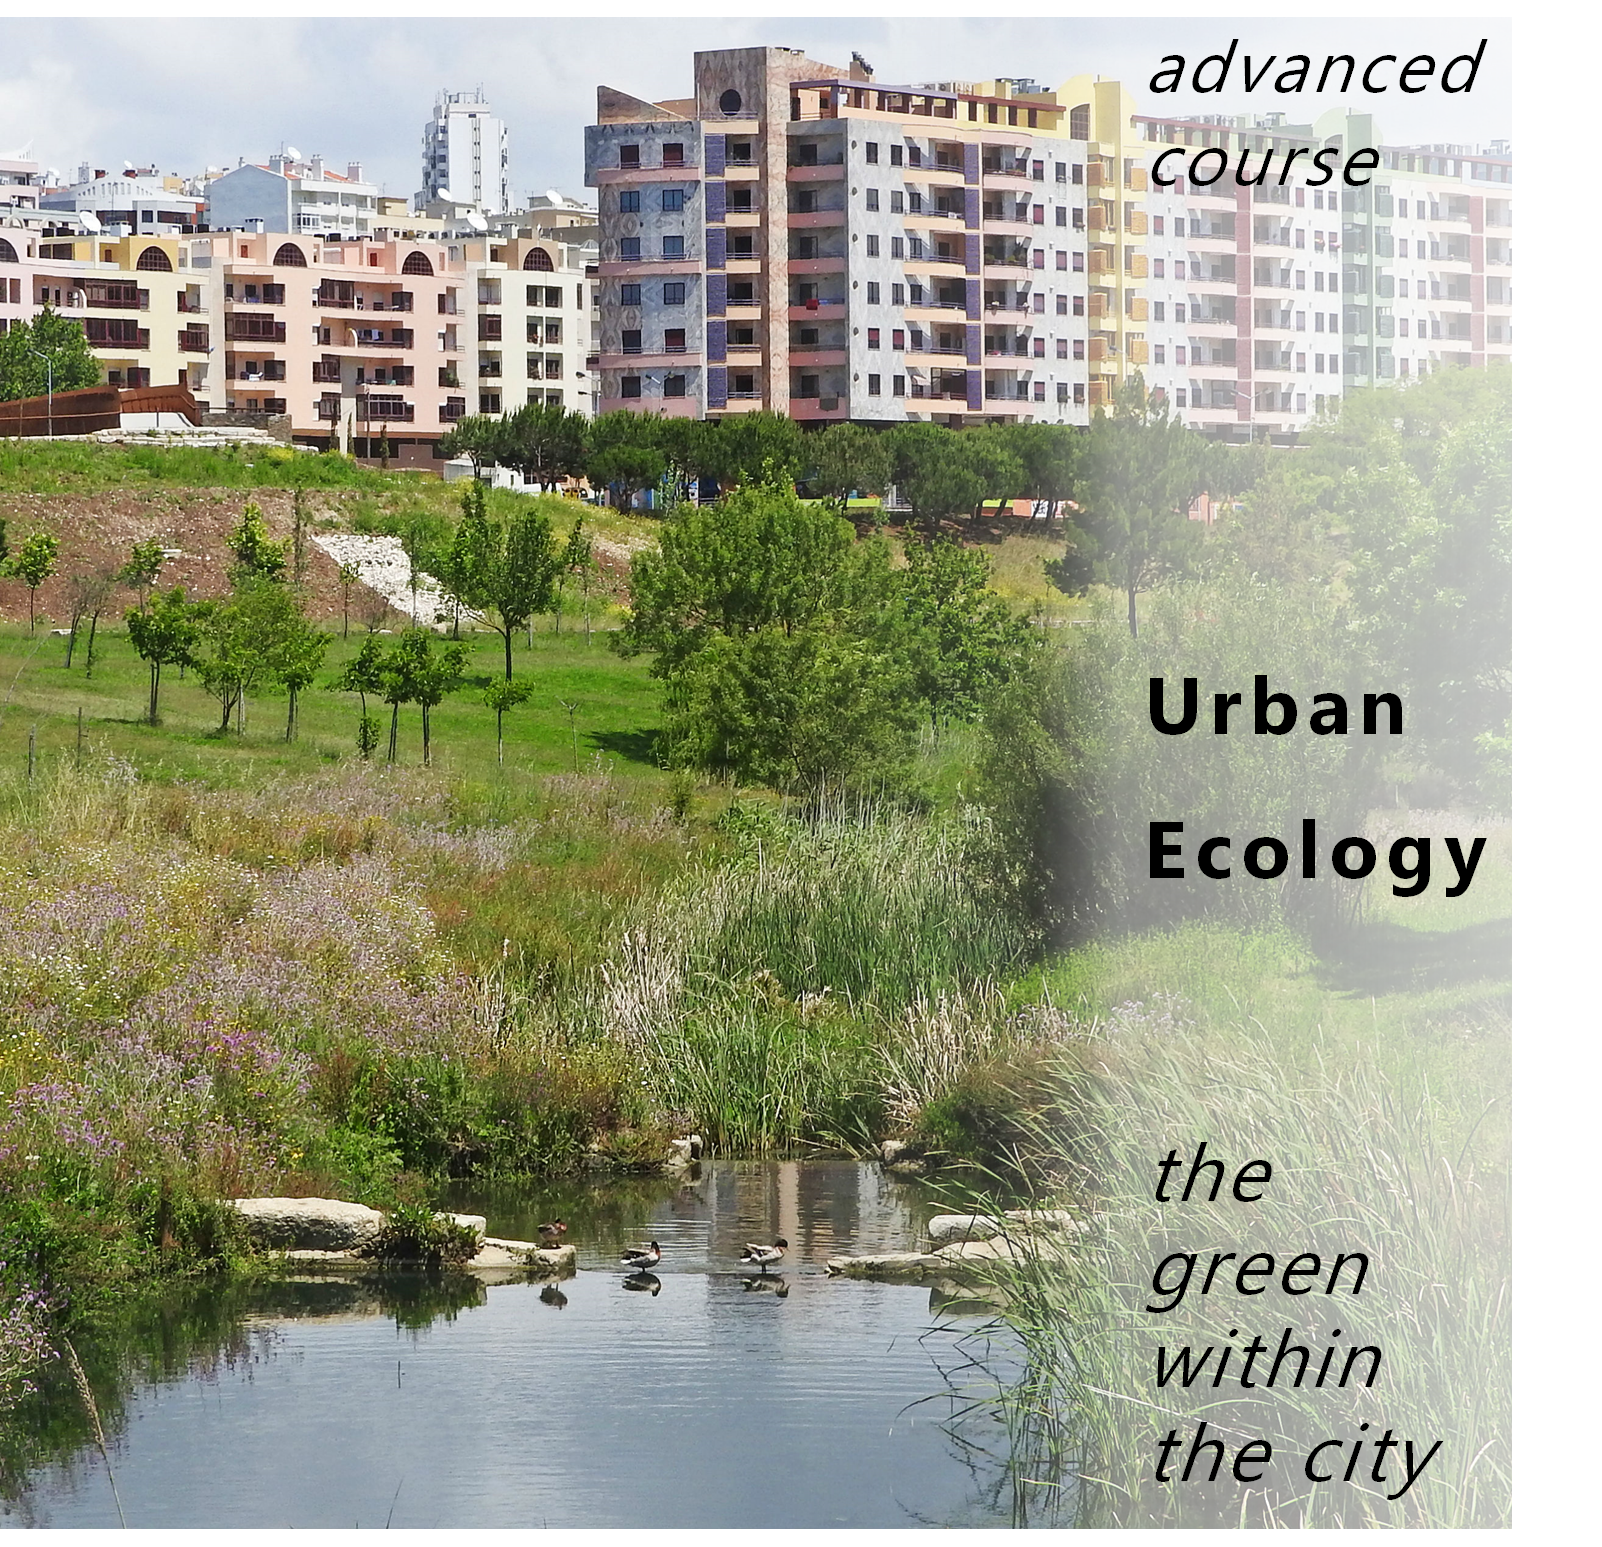 UrbanEcology_course